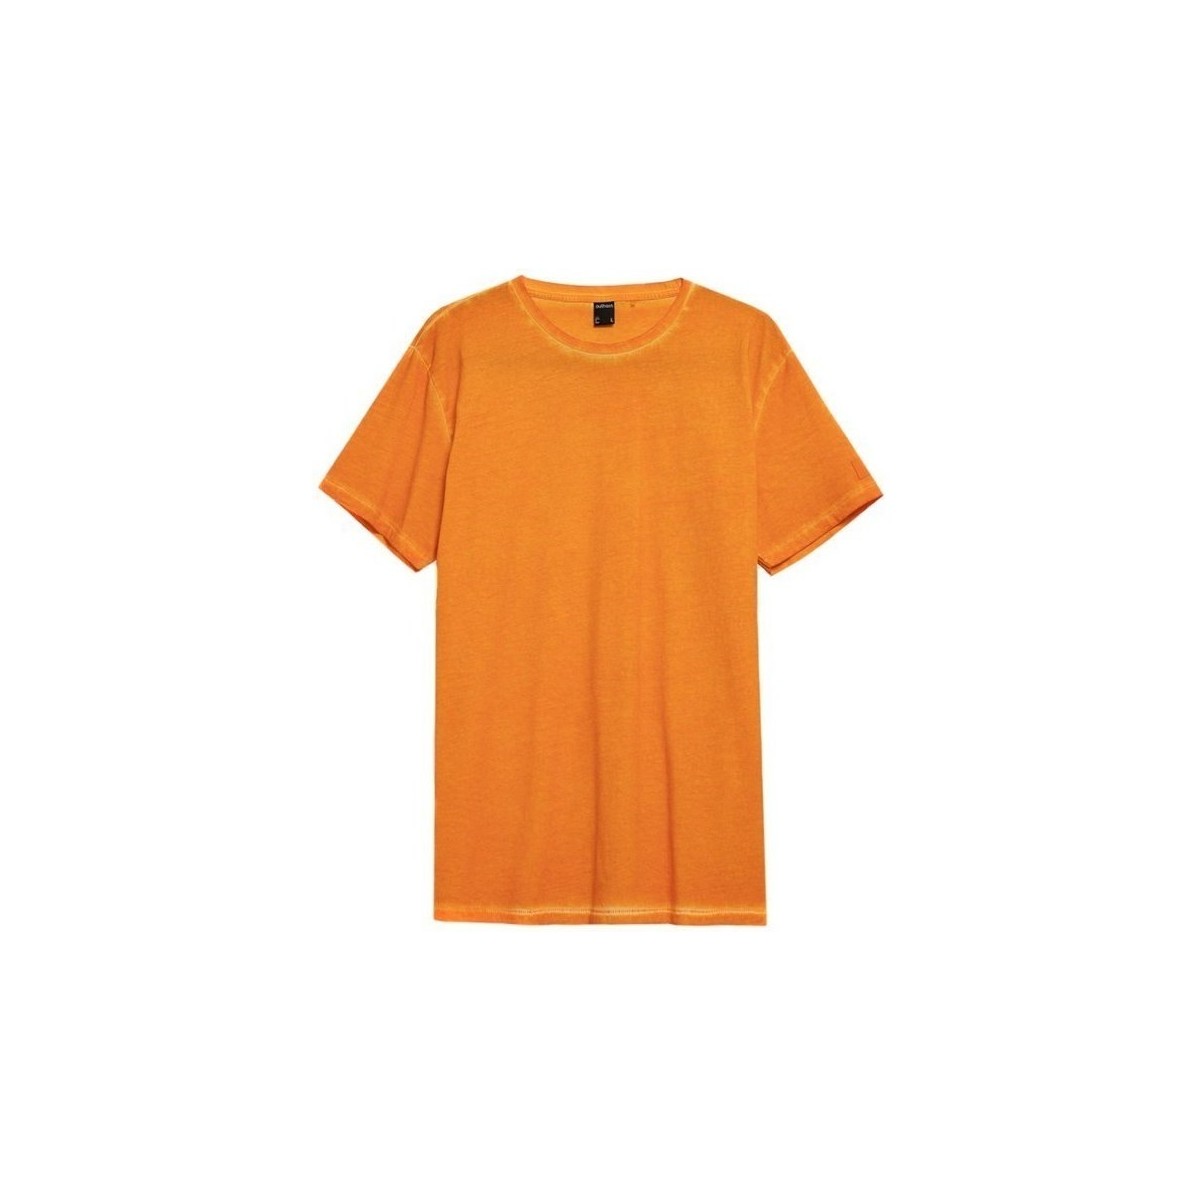 textil Herre T-shirts m. korte ærmer Outhorn TSM603 Orange